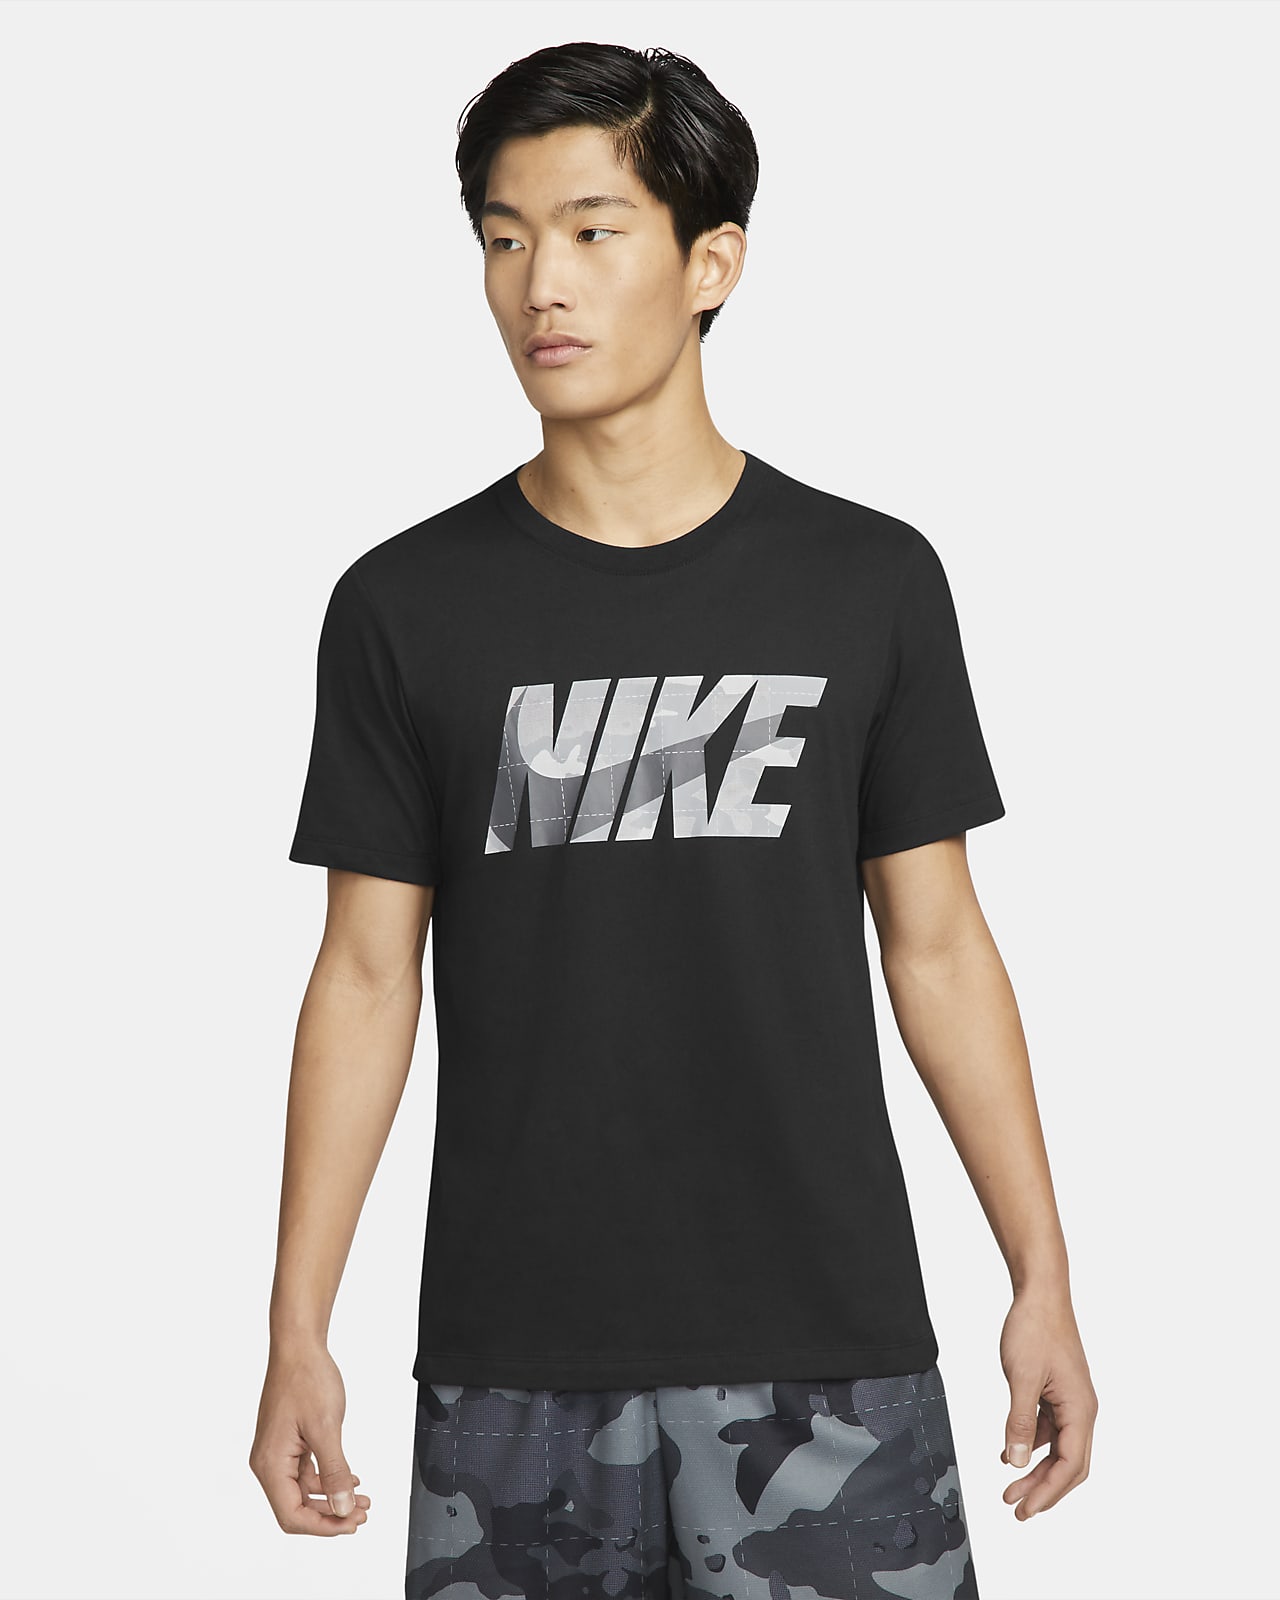 Nike Dri-Fit Men'S Training T-Shirt. Nike Vn